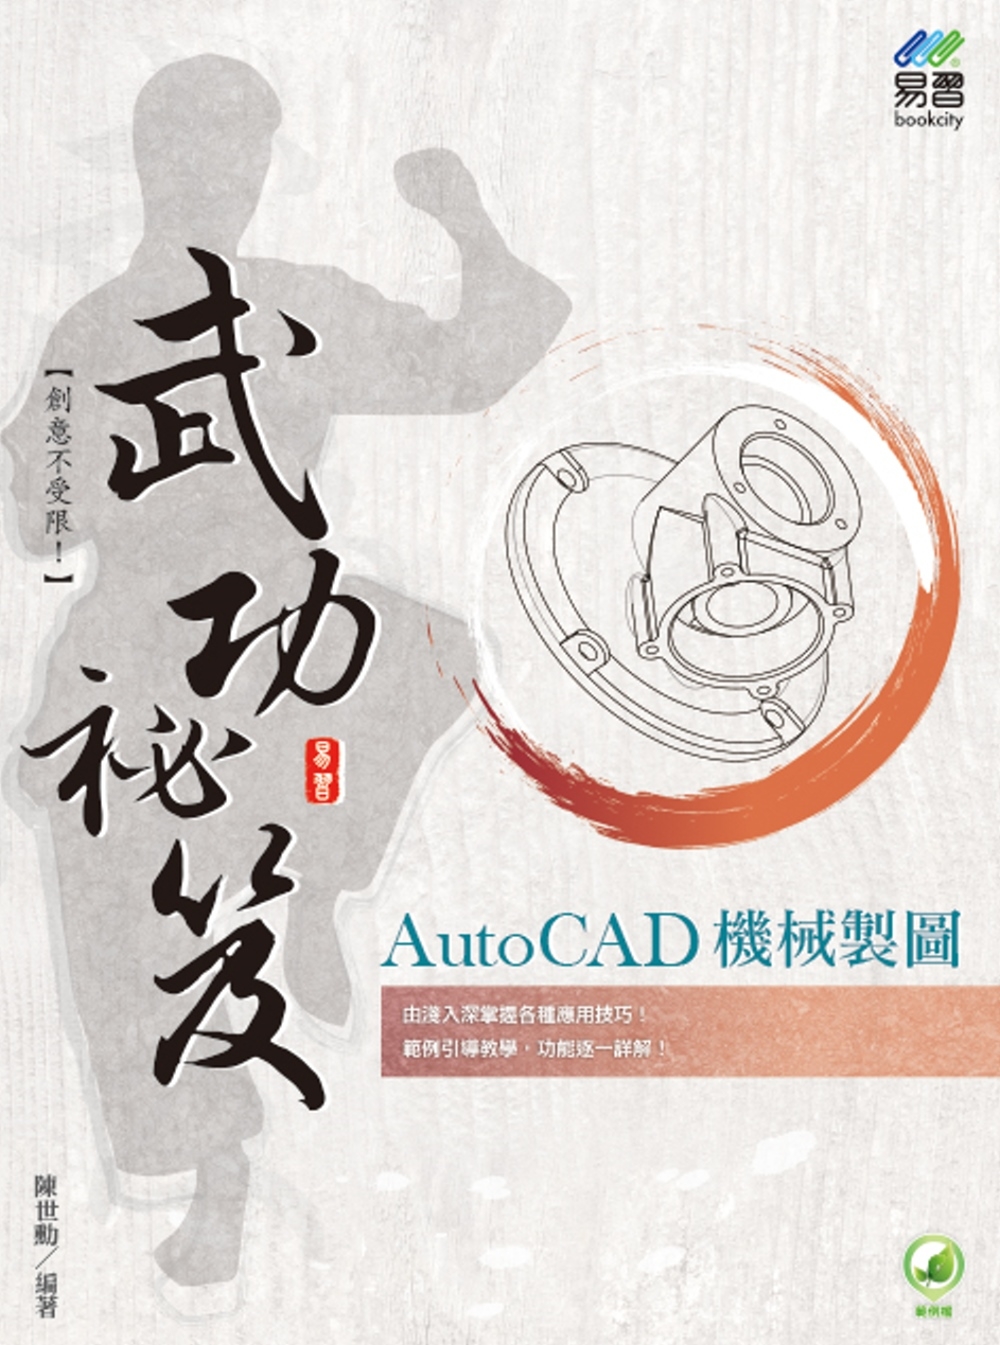 AutoCAD 機械製圖 武功祕笈